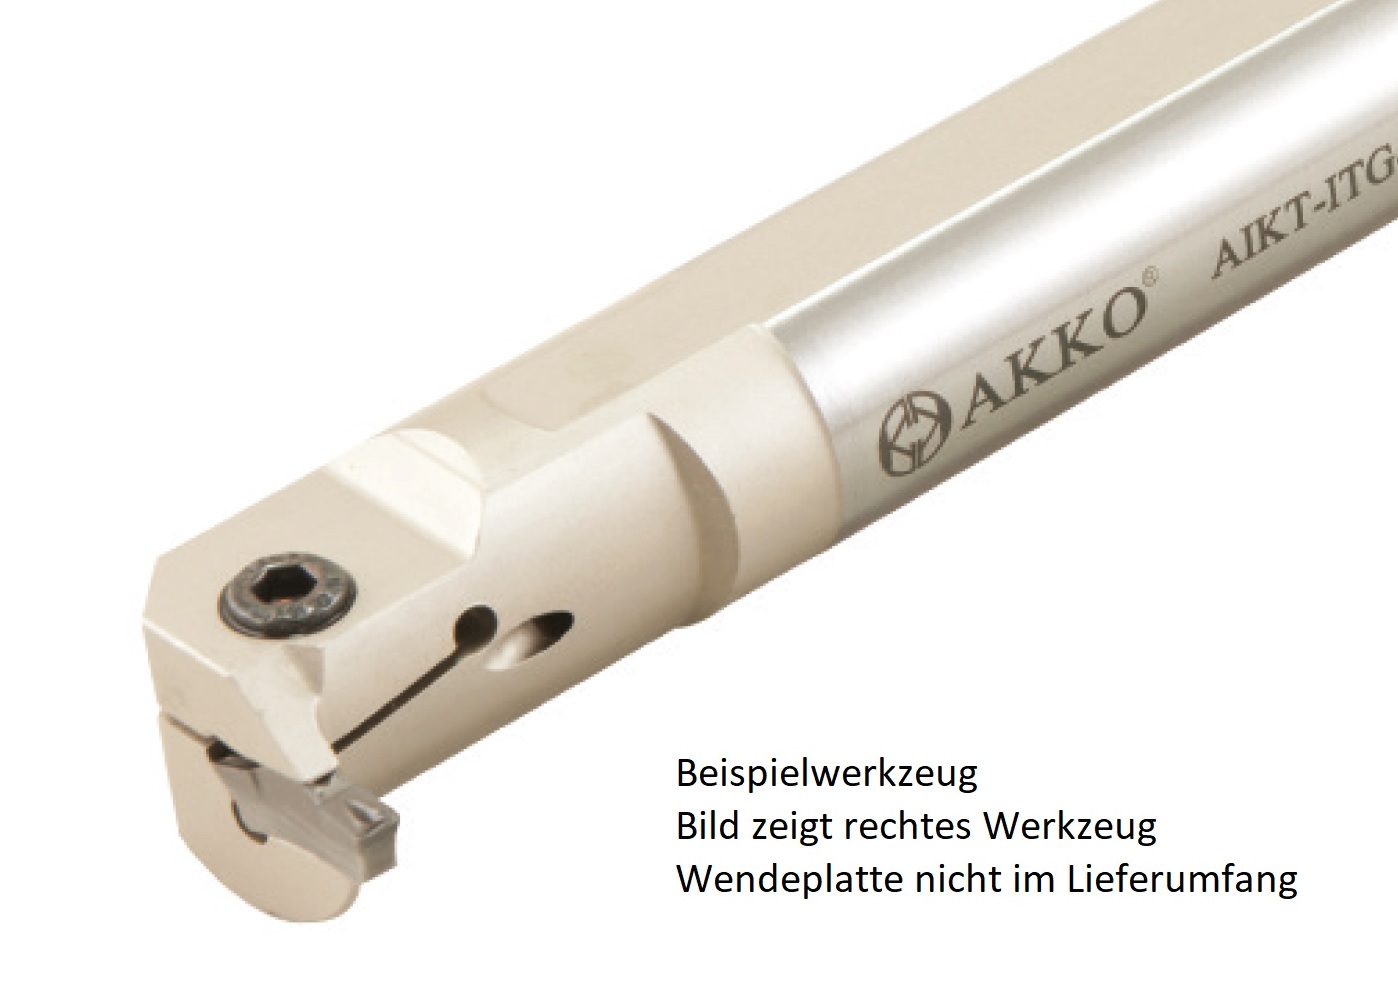 AKKO-Innen-Stechhalter, kompatibel mit Iscar-Stechplatte TGM.-3
Schaft-ø 16, mit Innenkühlung, links